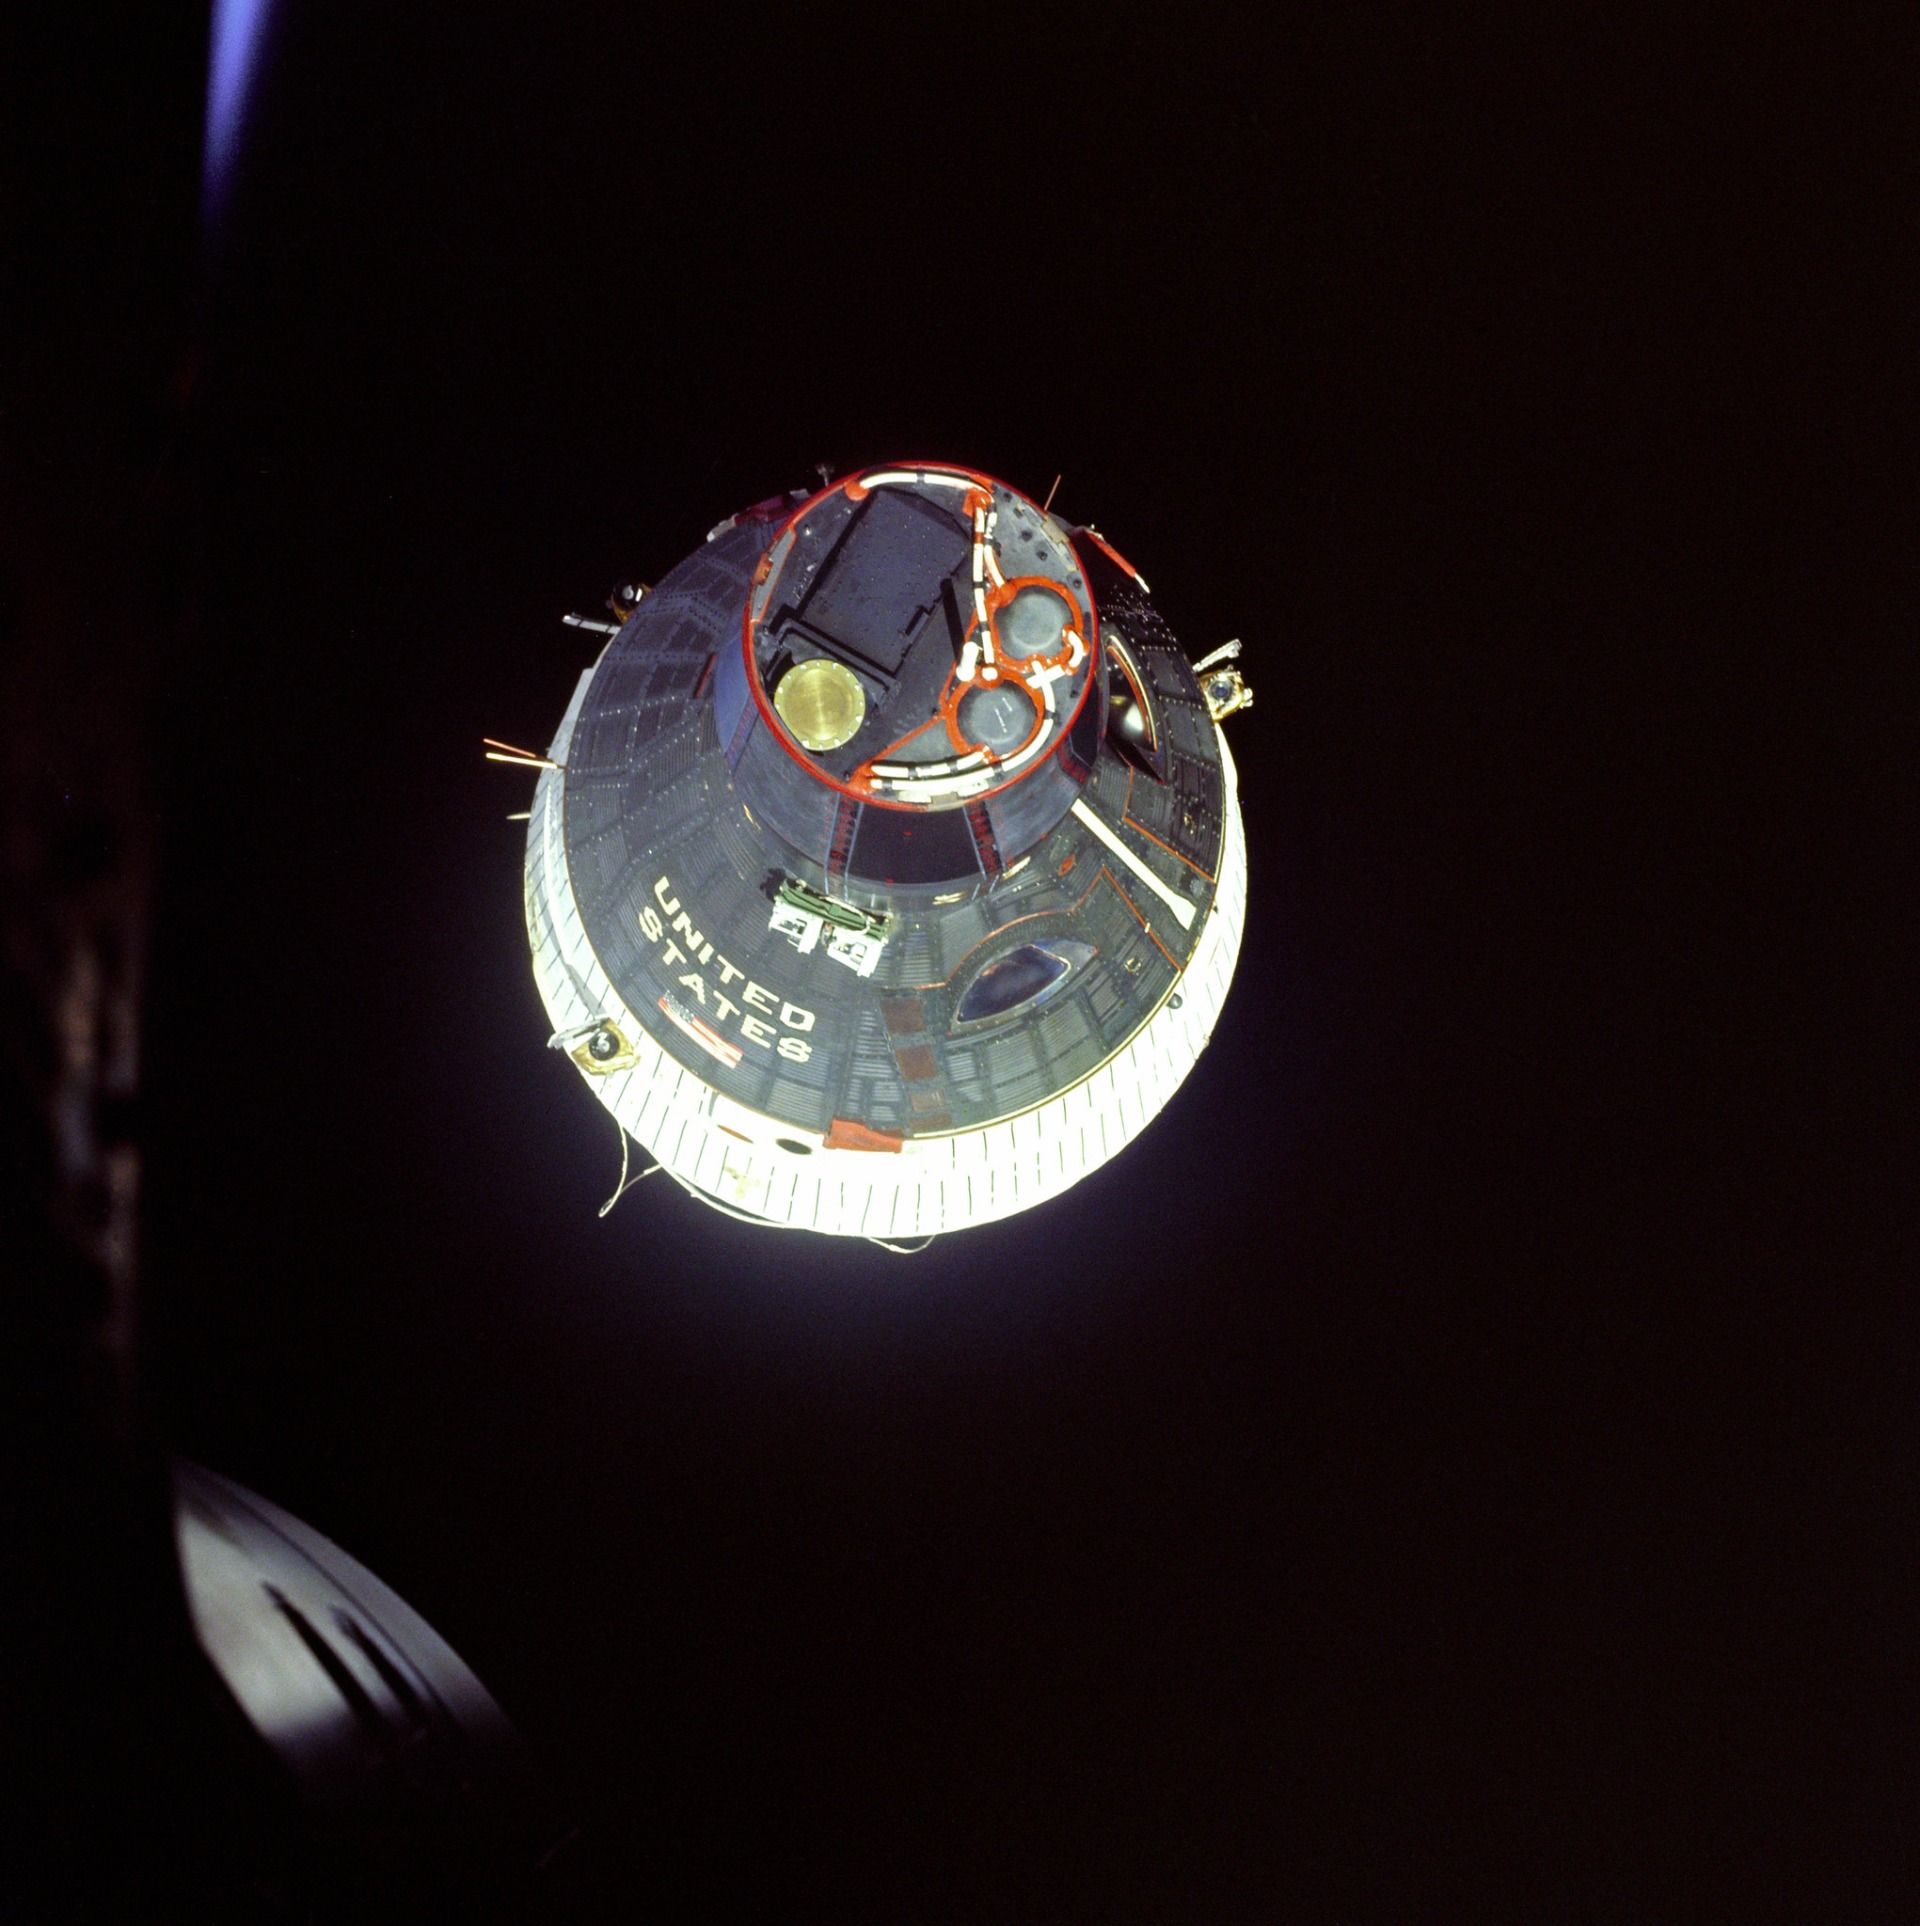 Gemini 7 module seen from Gemini 6A in space